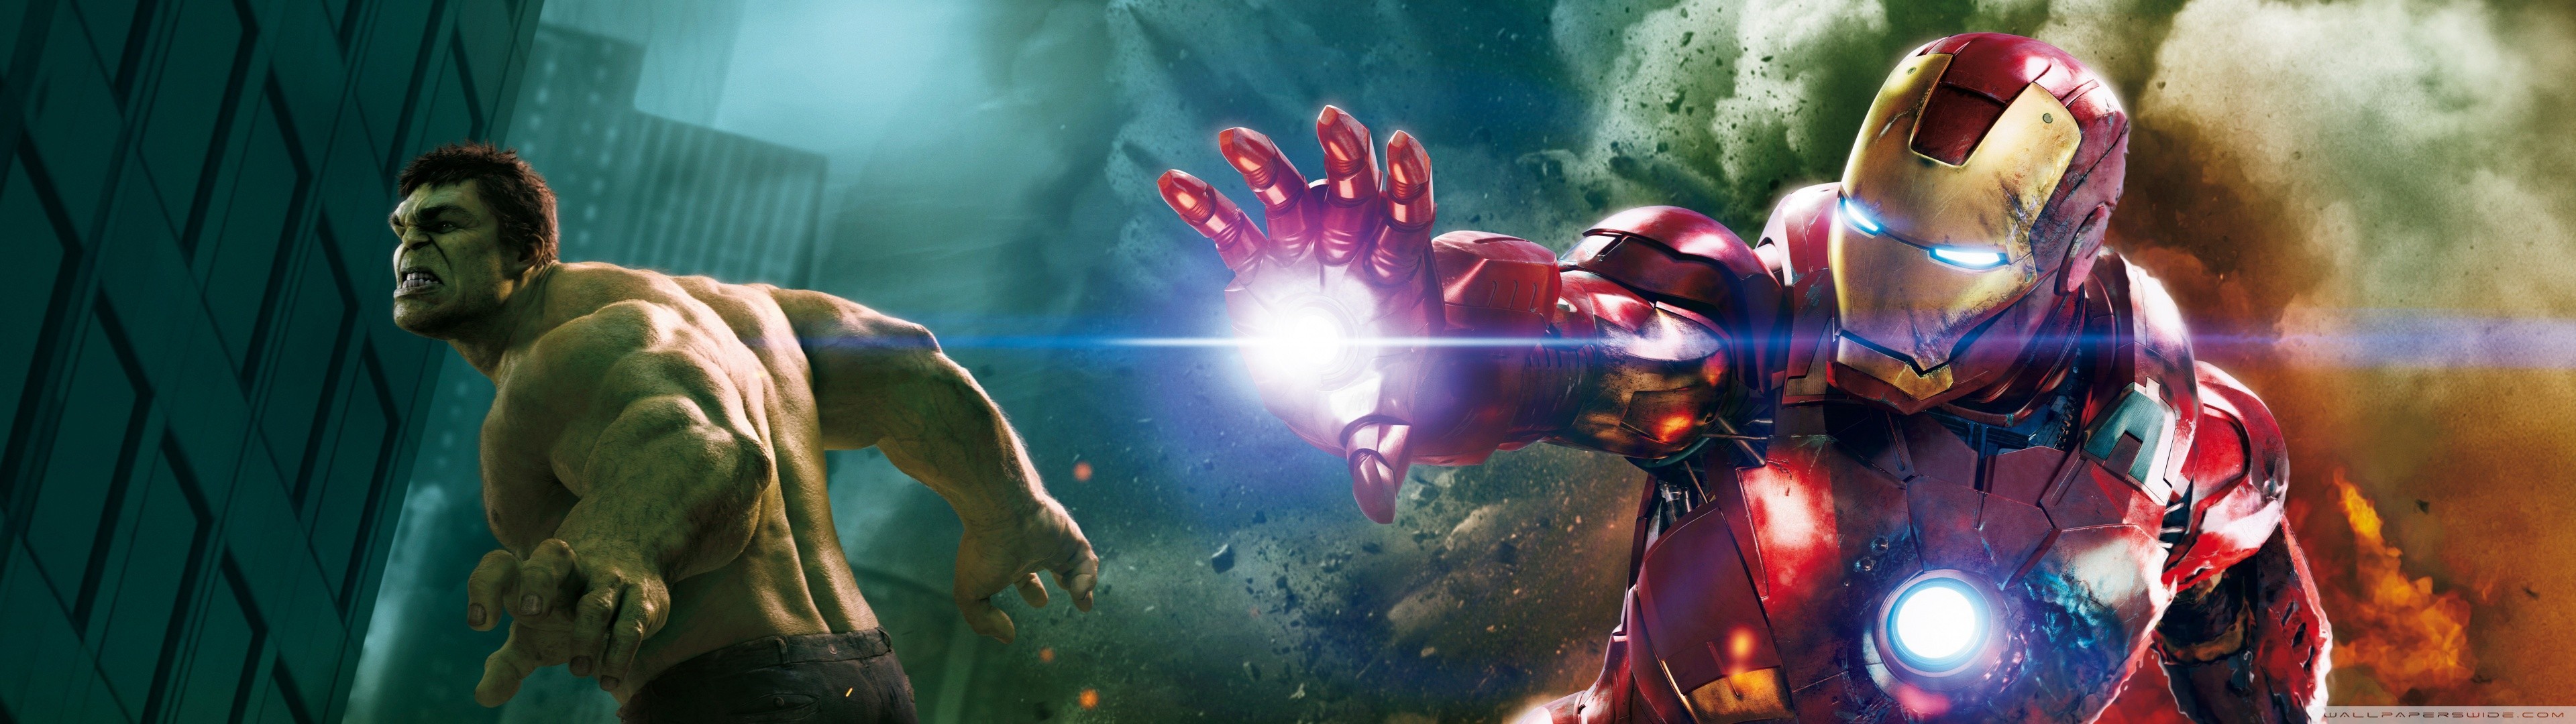 Iron Man, Hulk Wallpaper